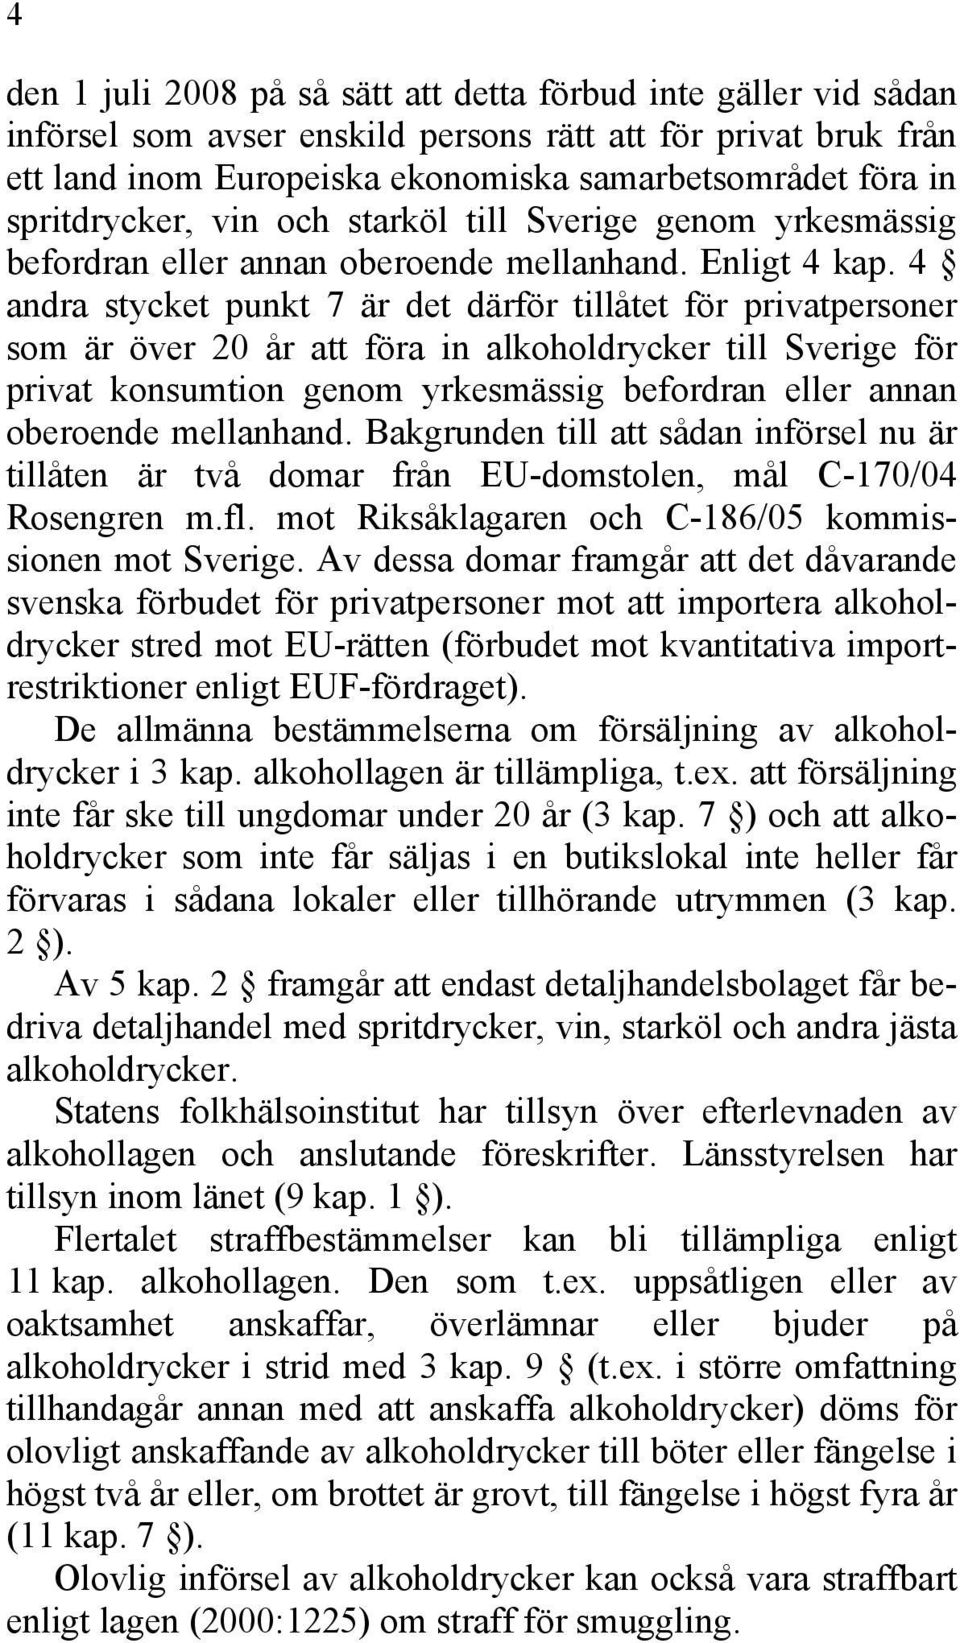 4 andra stycket punkt 7 är det därför tillåtet för privatpersoner som är över 20 år att föra in alkoholdrycker till Sverige för privat konsumtion genom yrkesmässig befordran eller annan oberoende